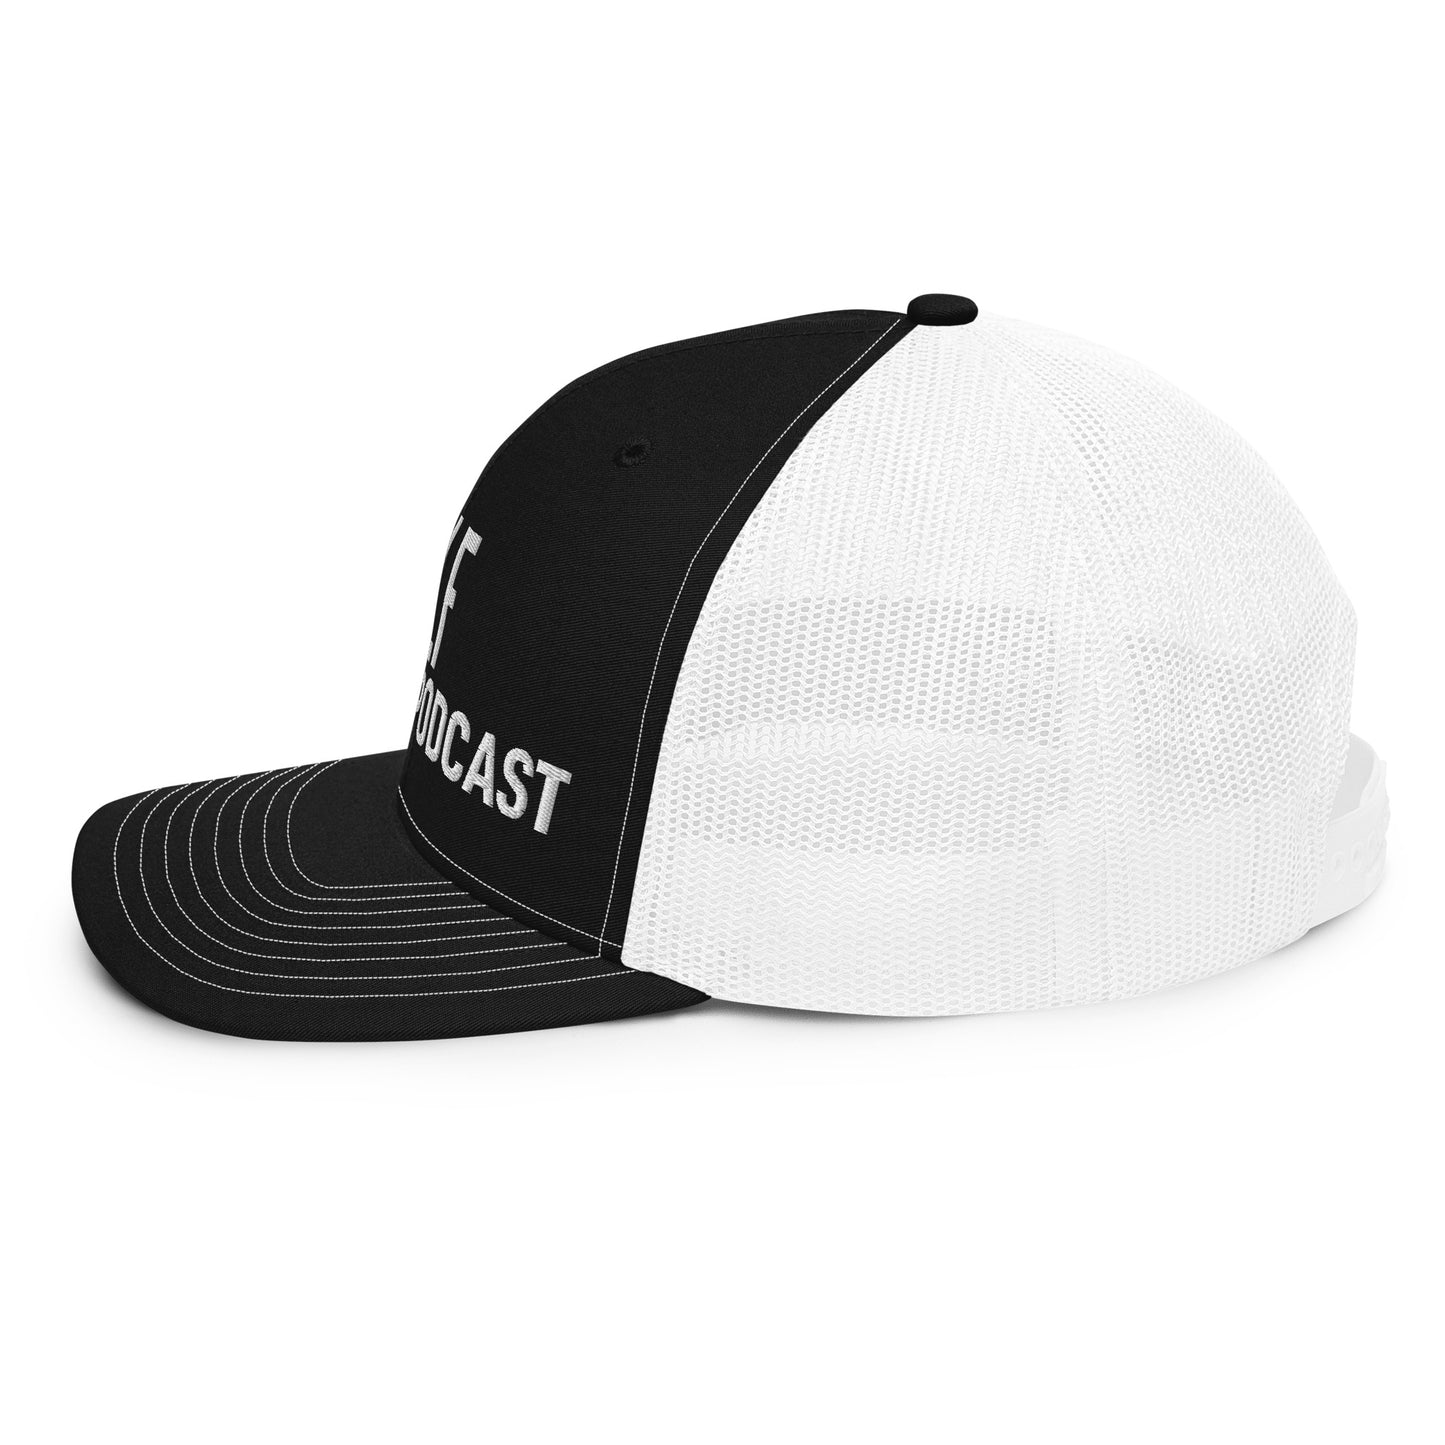 Golf Gambling Podcast - Trucker Cap (White Logo)